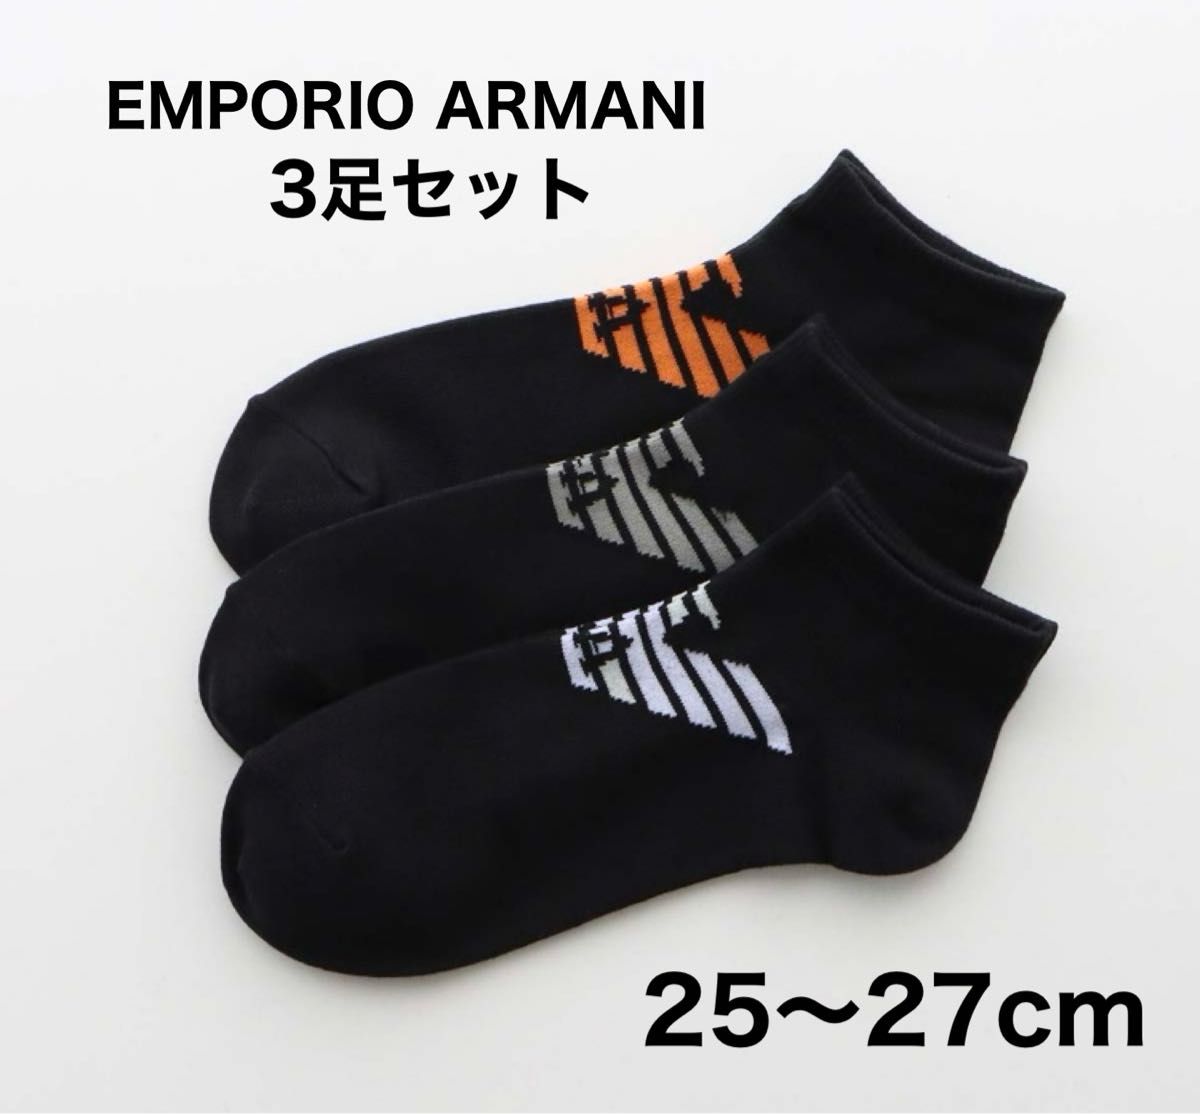 EMPORIO ARMANI  エンポリオアルマーニ 靴下3足セット ブラック ショートソックス 25-27cm